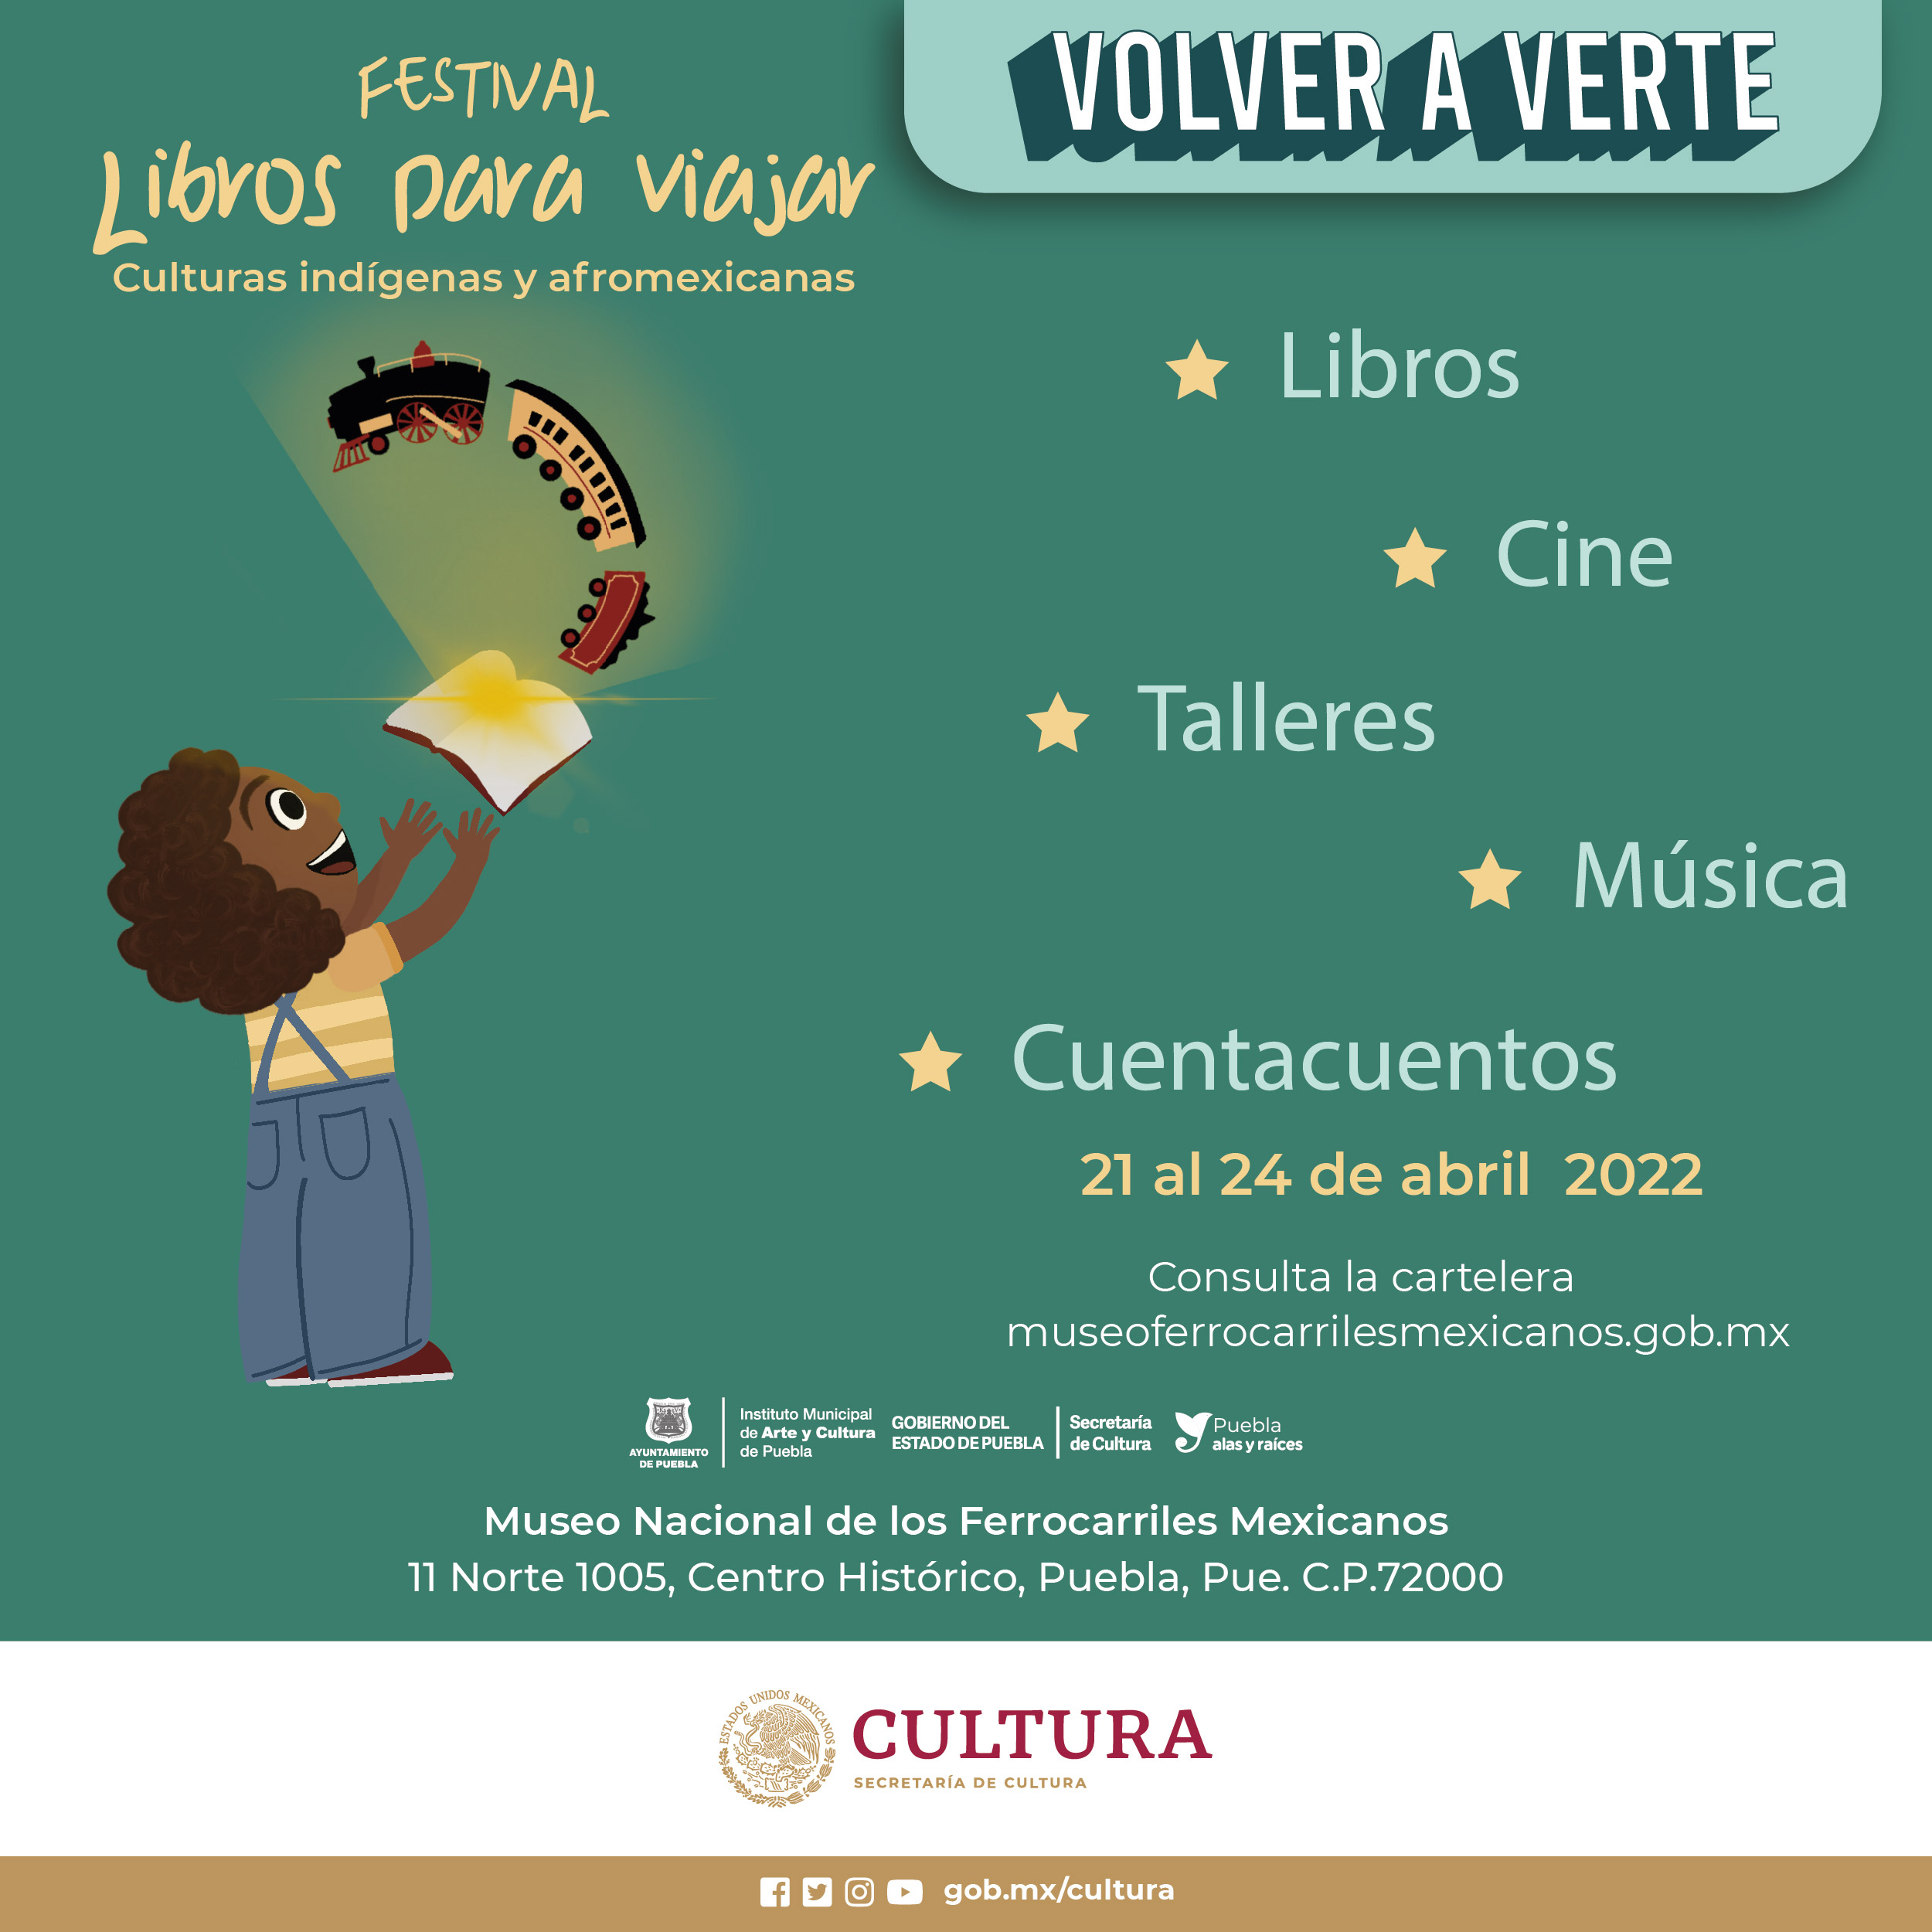 El festival Libros para viajar “Culturas indígenas y afromexicanas” celebra la diversidad cultural a través de la lectura